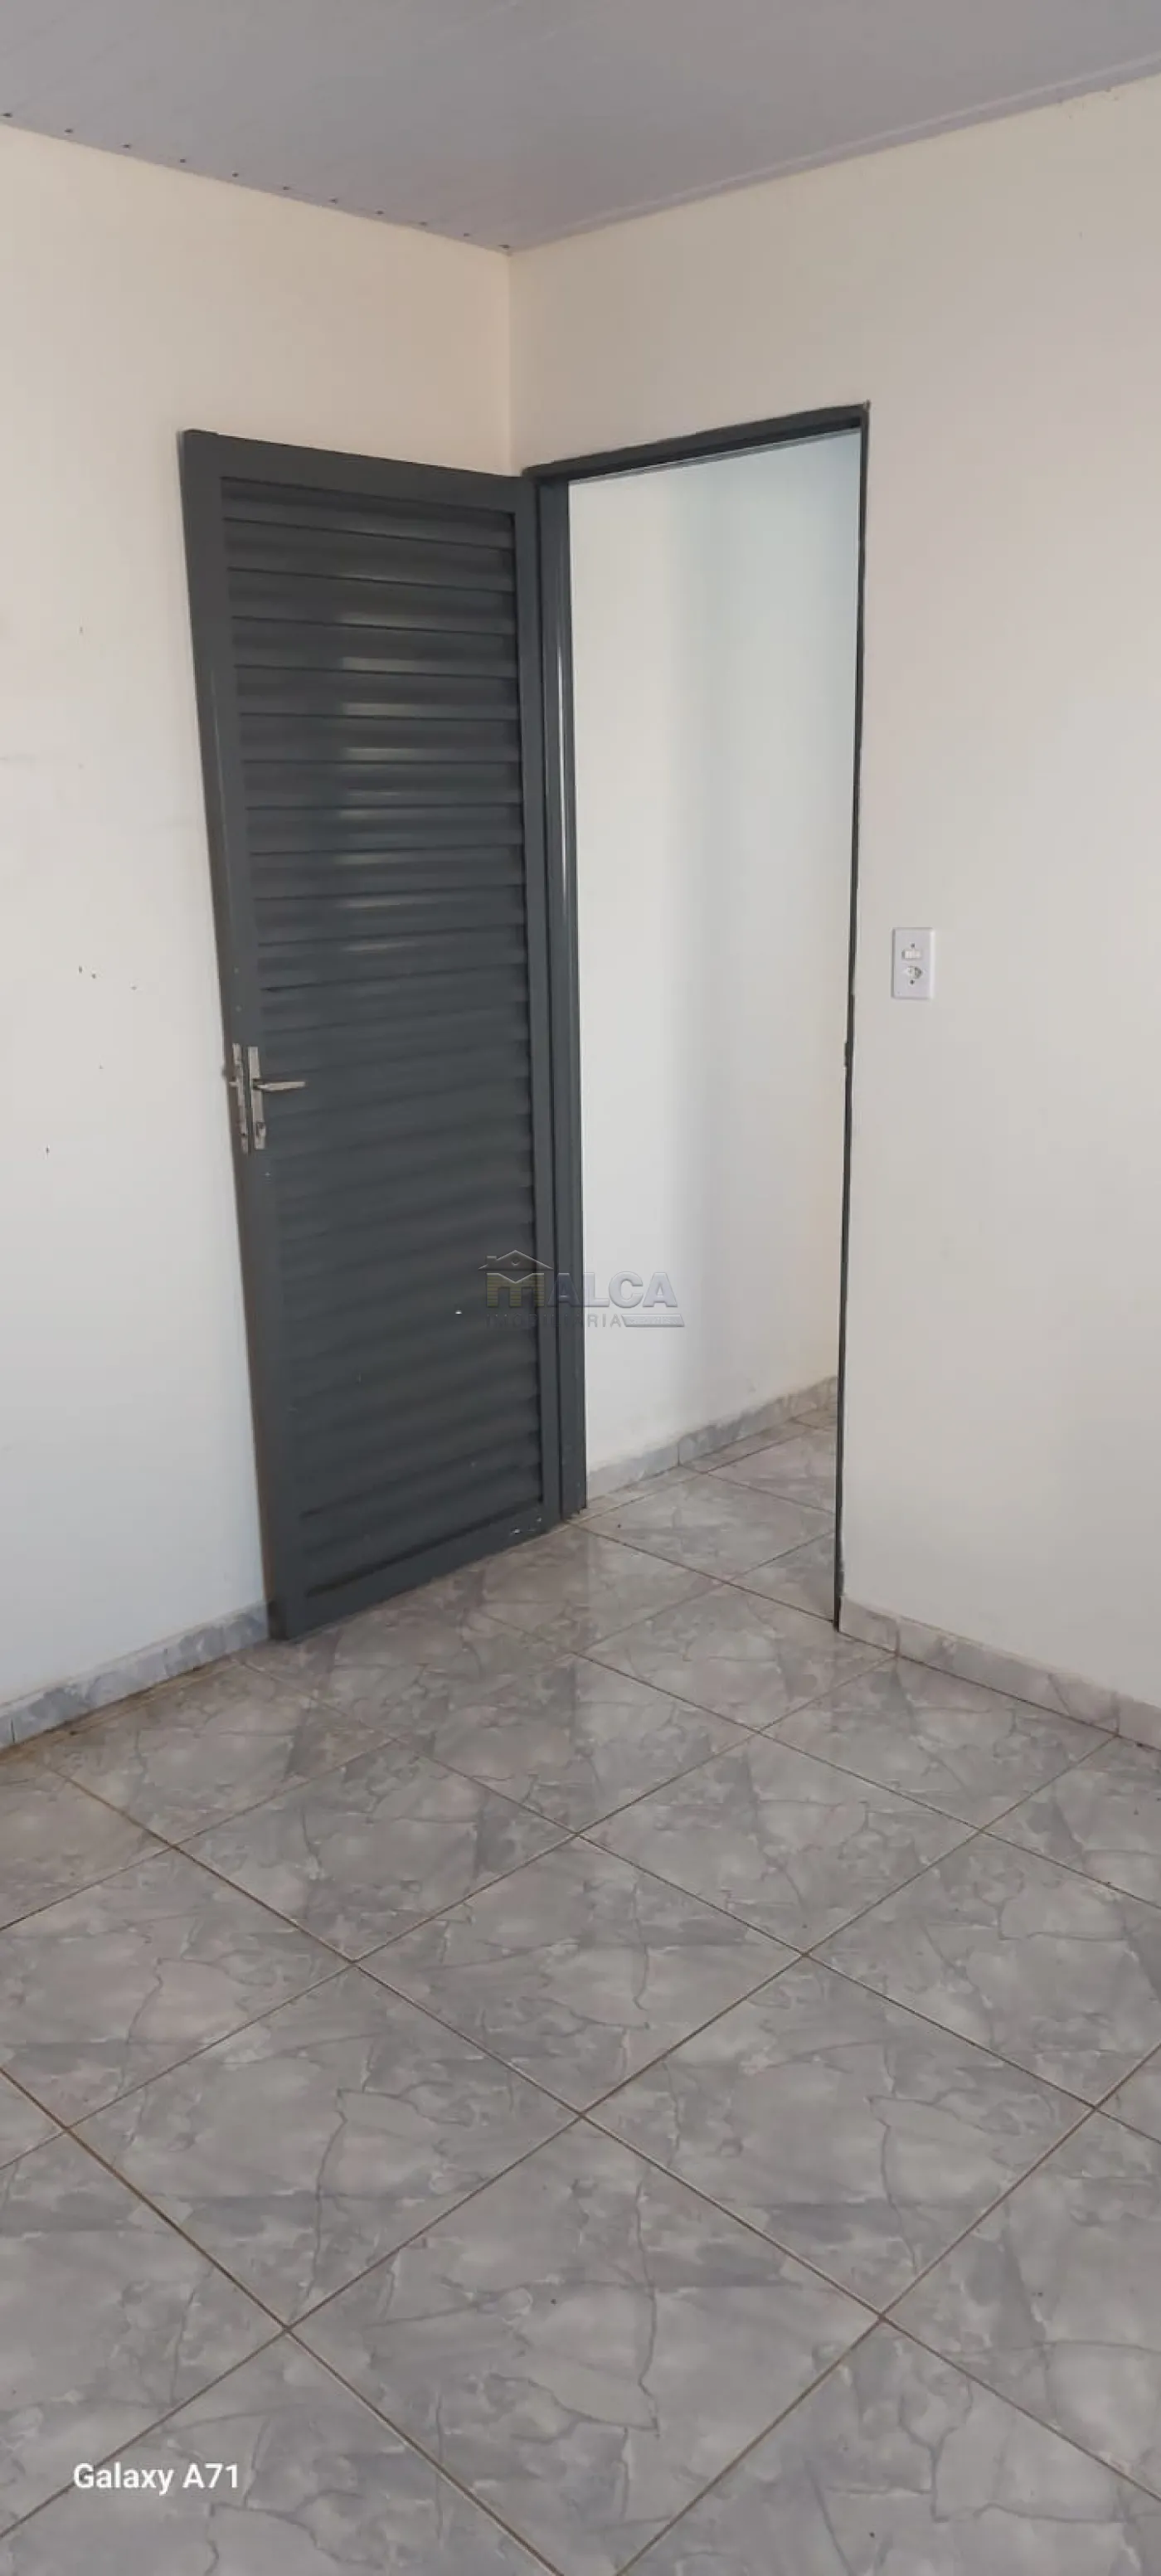 Alugar Casas / Padrão em São José do Rio Pardo R$ 950,00 - Foto 7